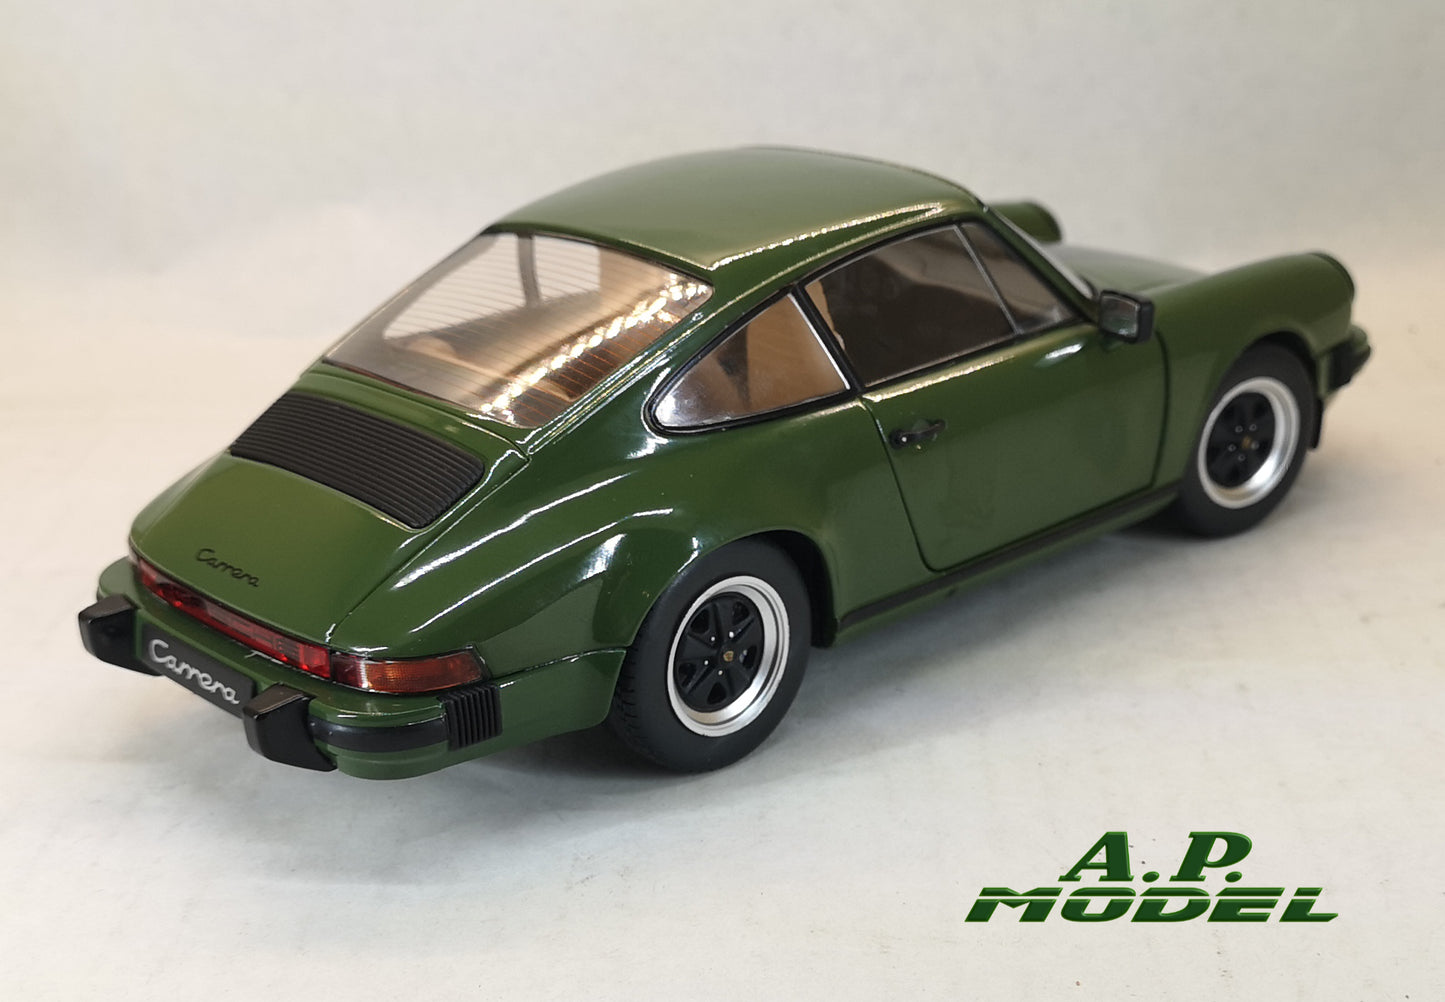 modellino auto 1:18 Porsche 911 3.0 sc del 1974 modellini auto vintage diecast